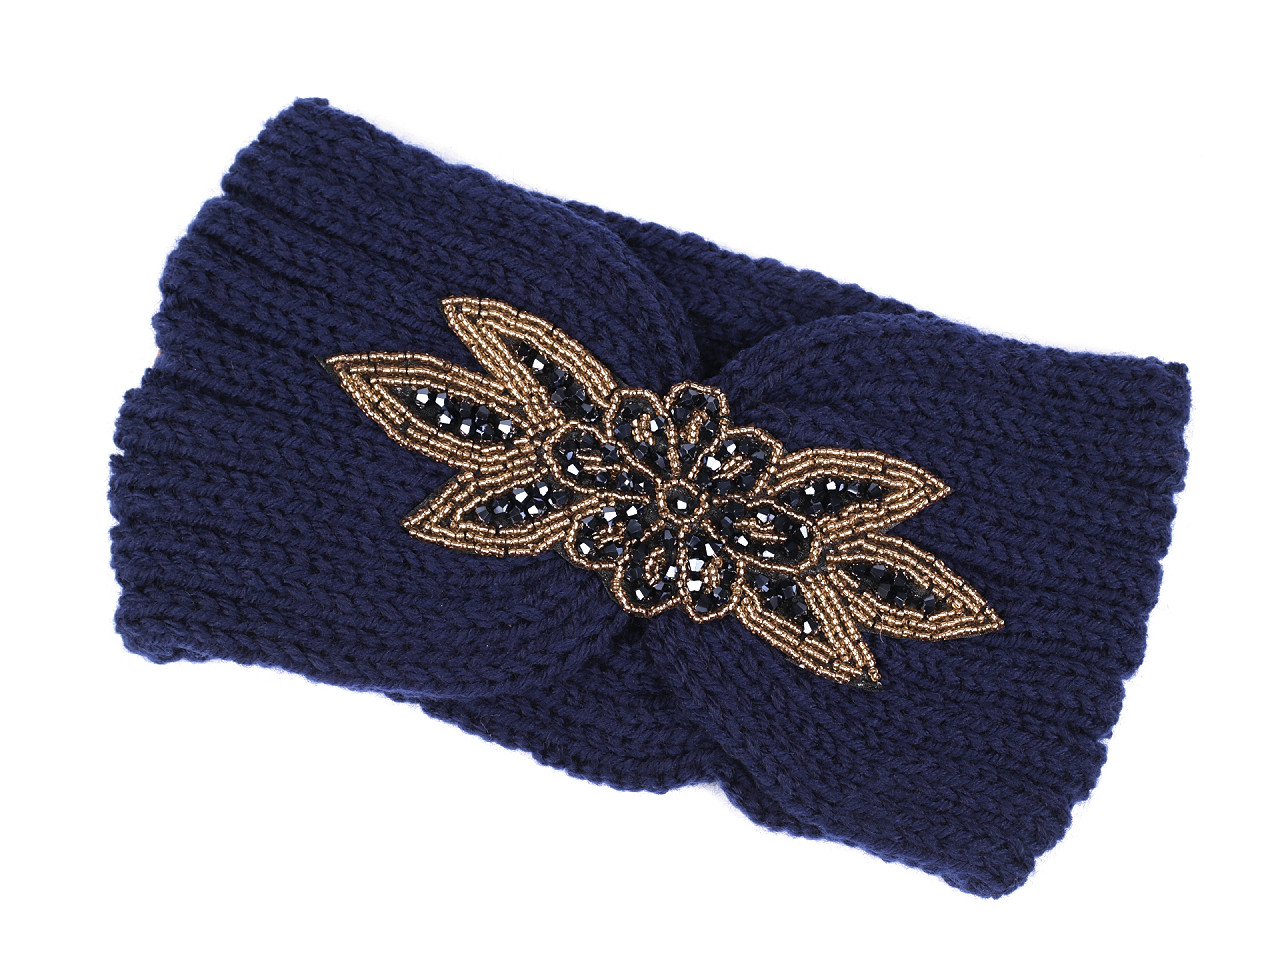 Damen Winter Stirnband mit Perlenaufnäher, dunkelblau, 1 Stück